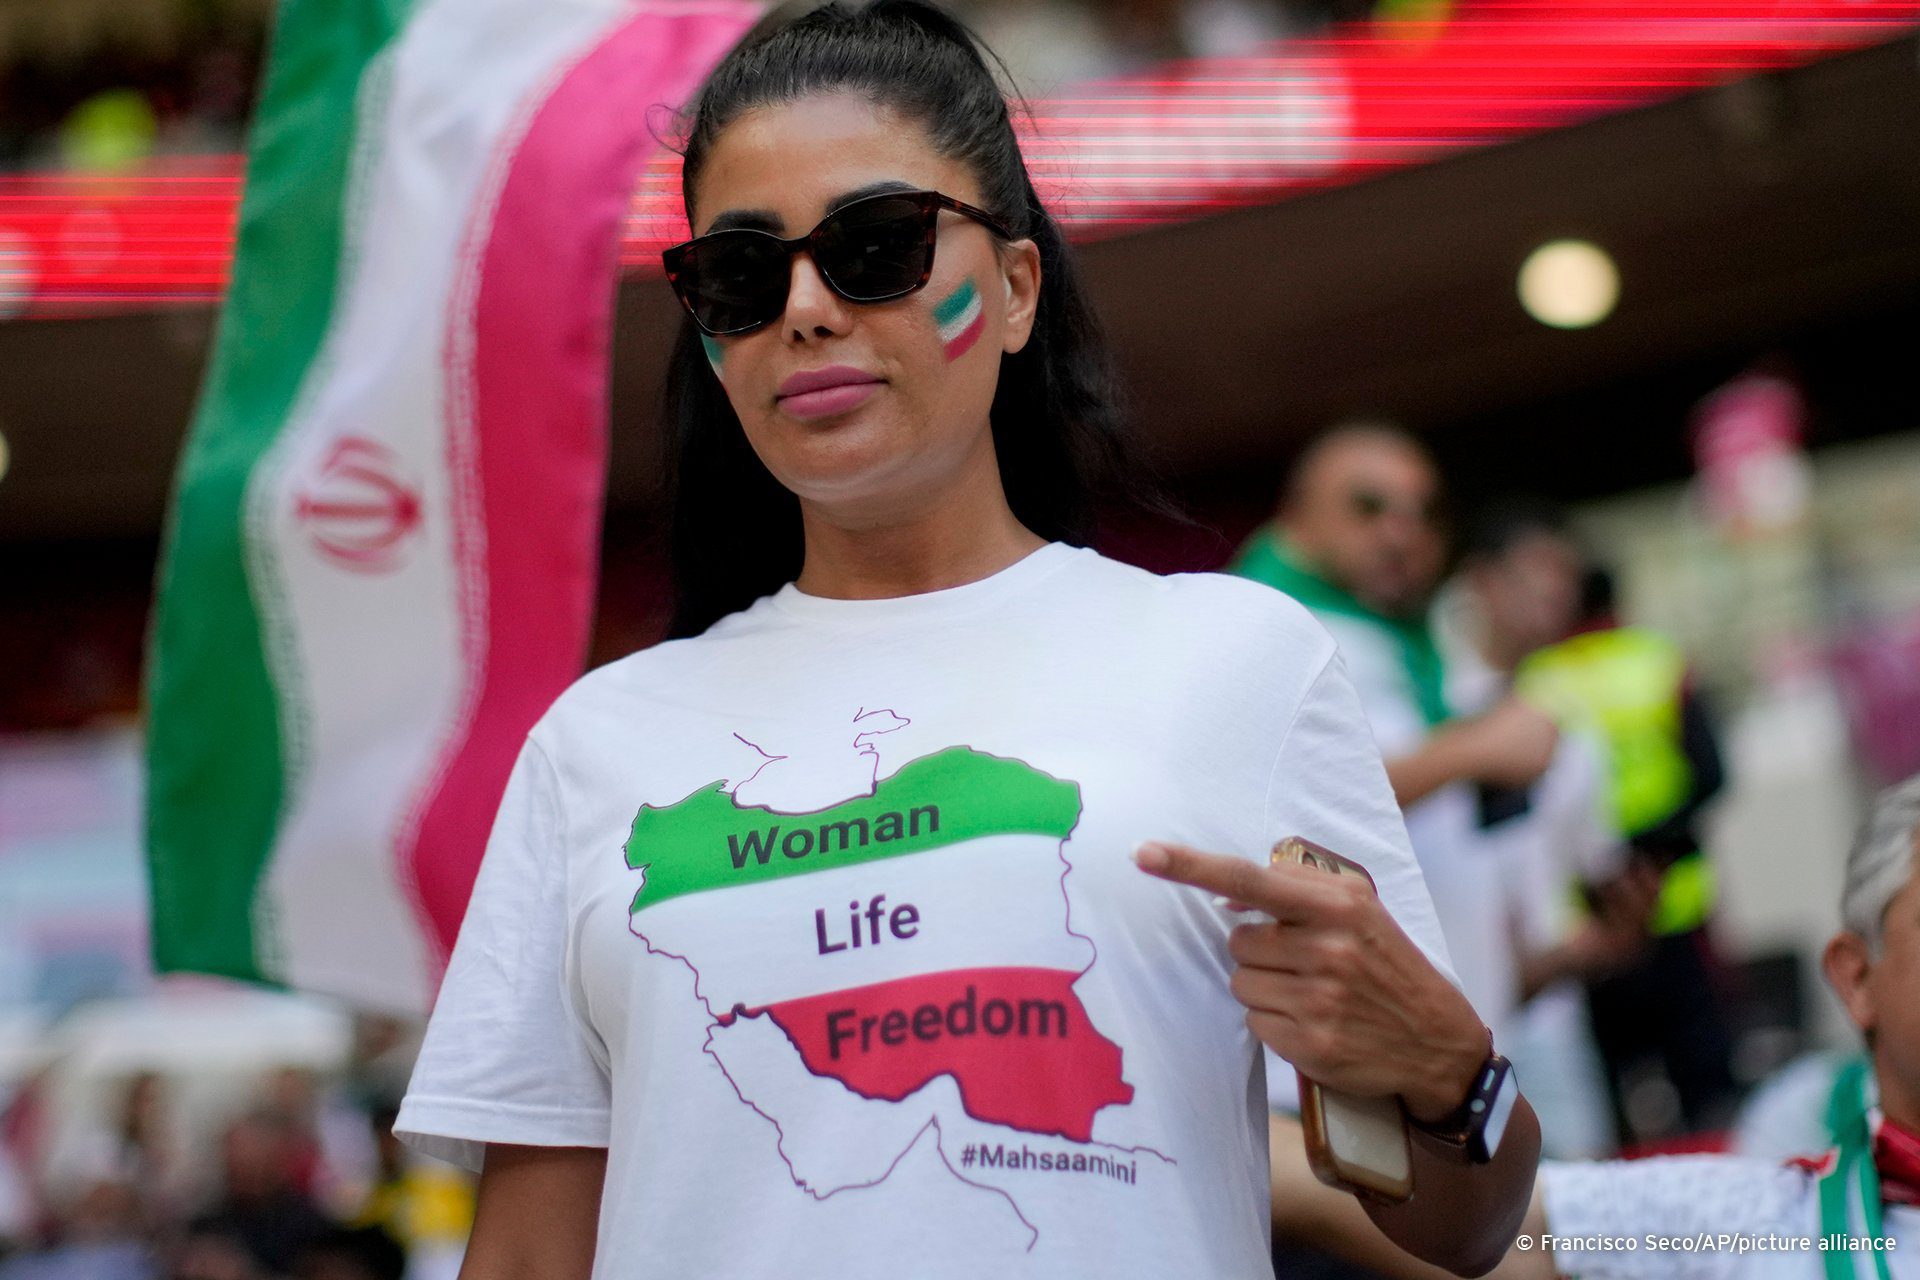 Em carta à FIFA, grupo de atletas iranianos pede exclusão do Irã por  violação dos direitos humanos. Isso deve acontecer? - Lei em Campo